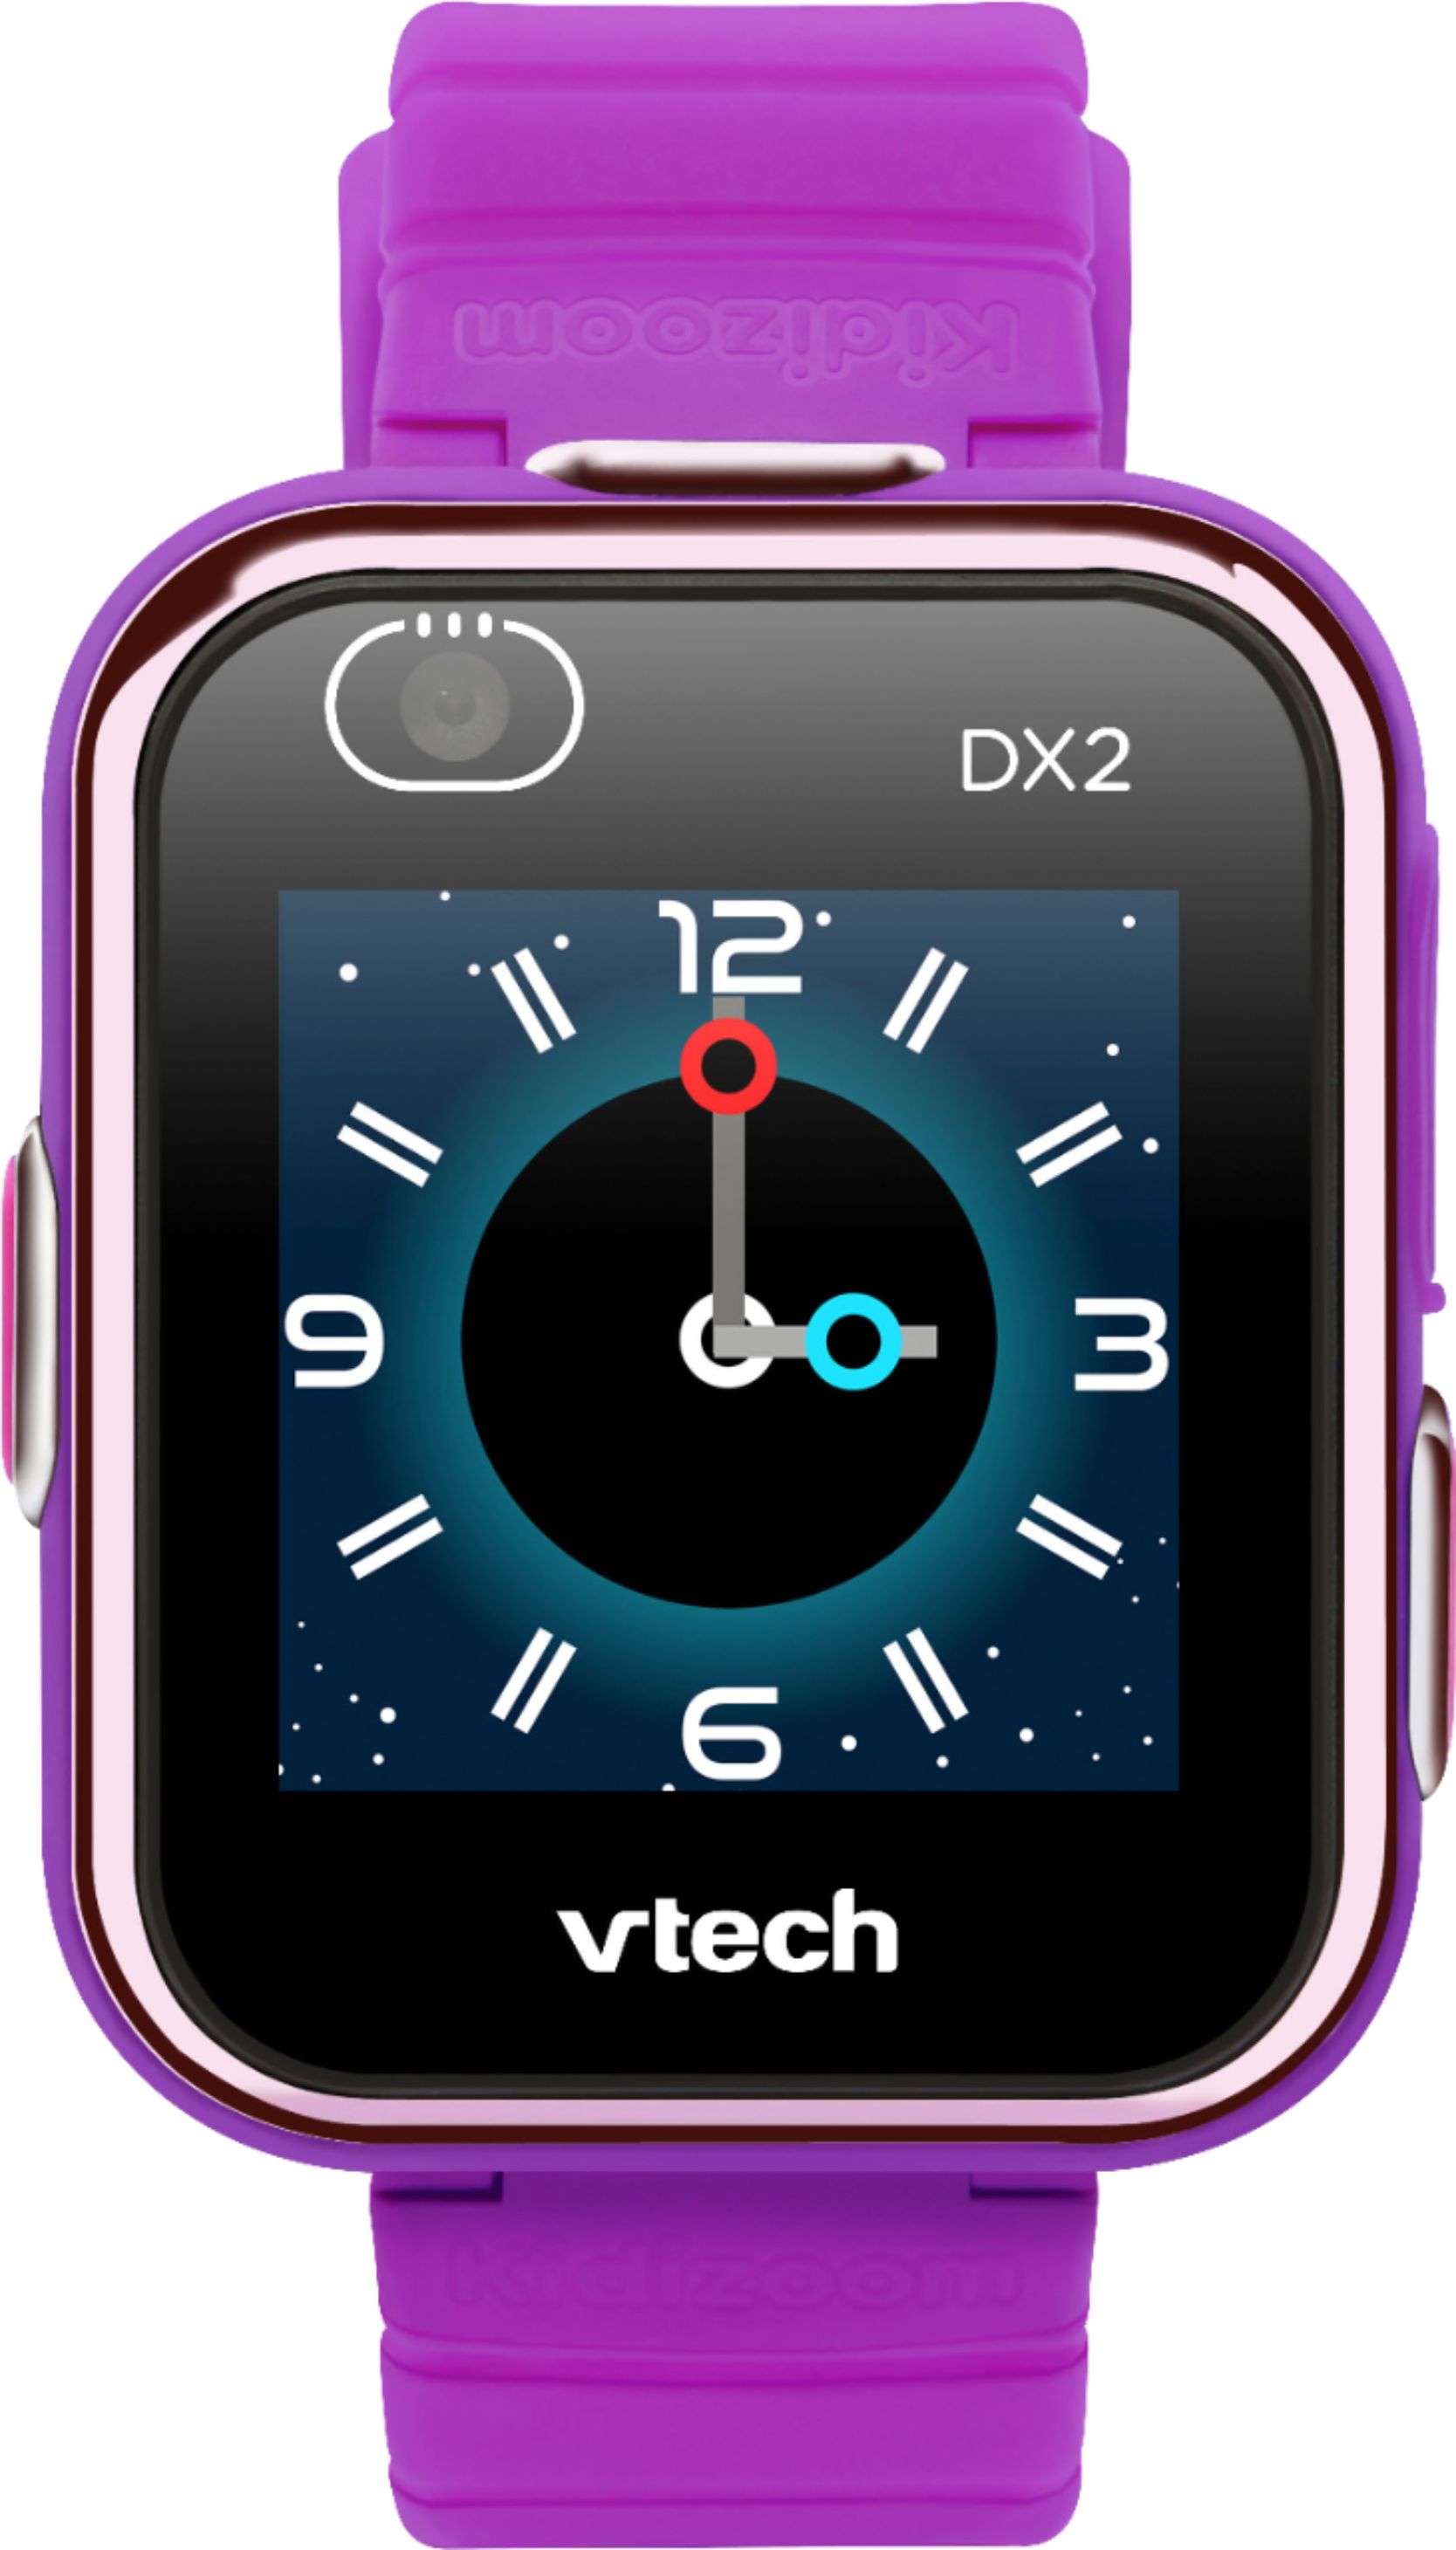 VTech KidiZoom Smartwatch DX2 Purple Purple 80-193810 - Best Buy